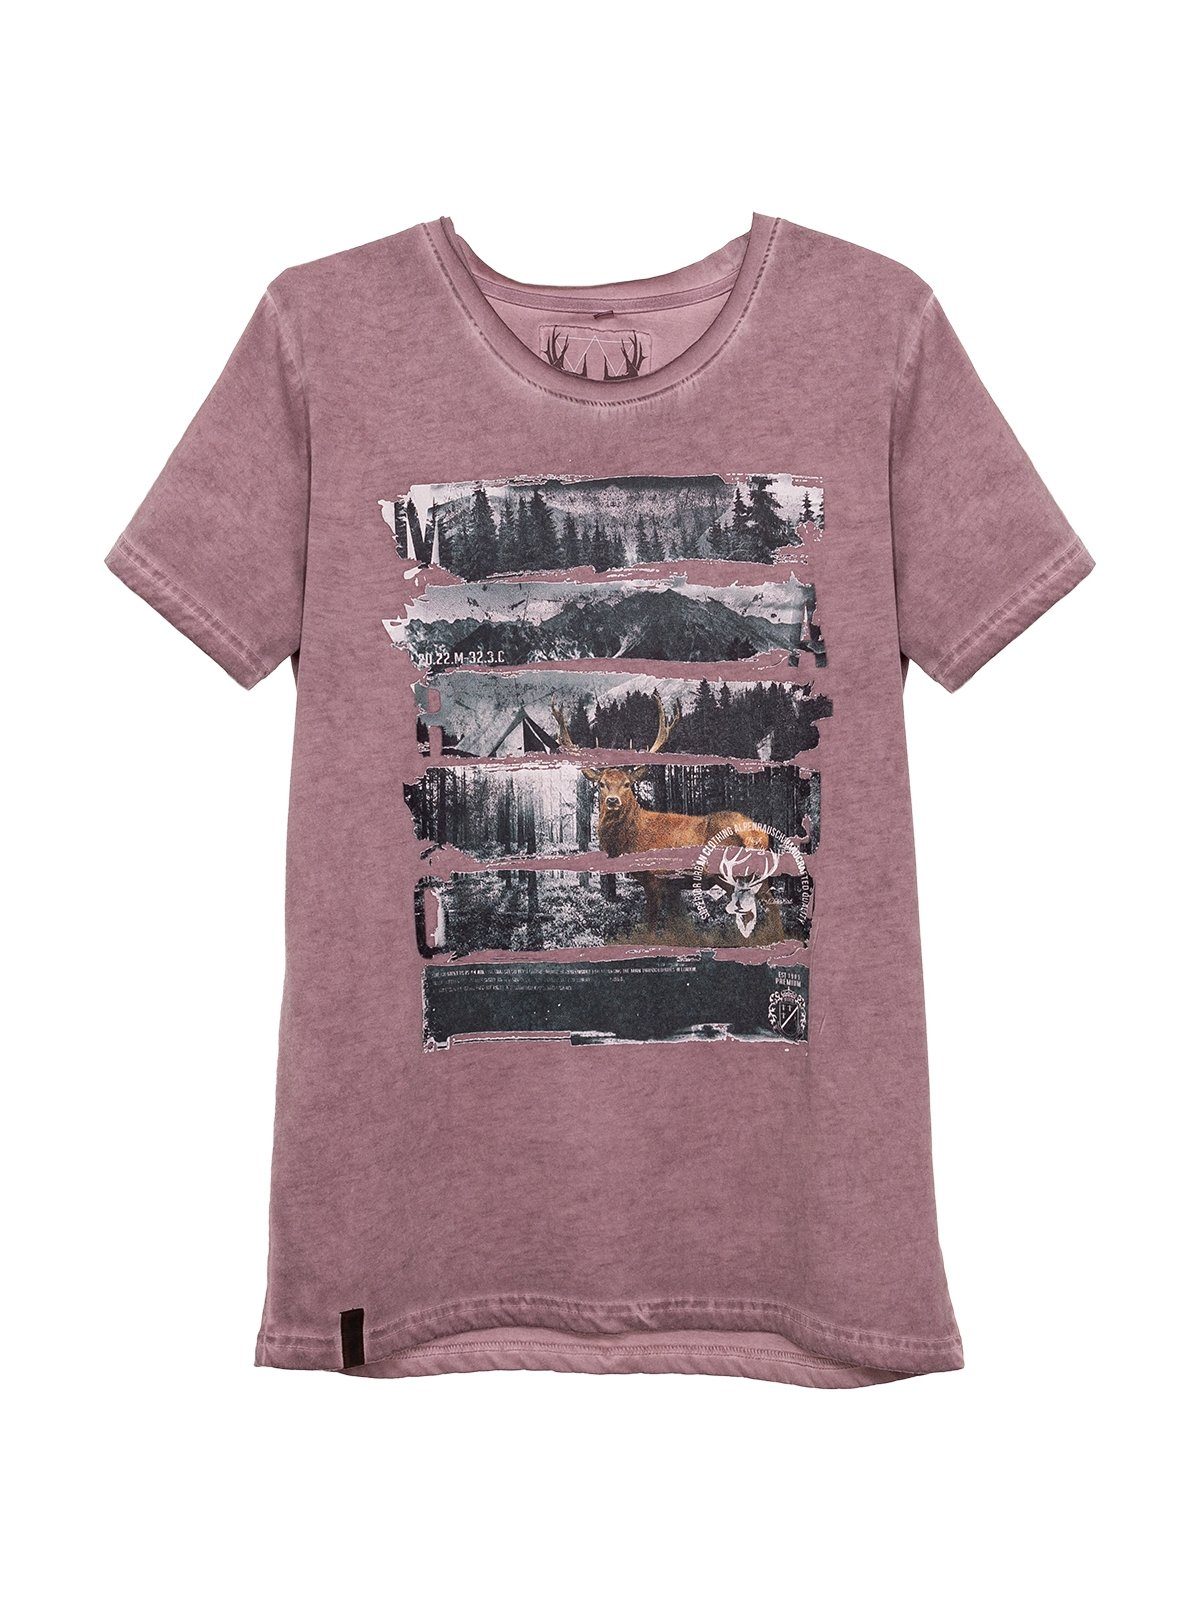 MarJo lavendel Trachtenshirt LUKE T-Shirt